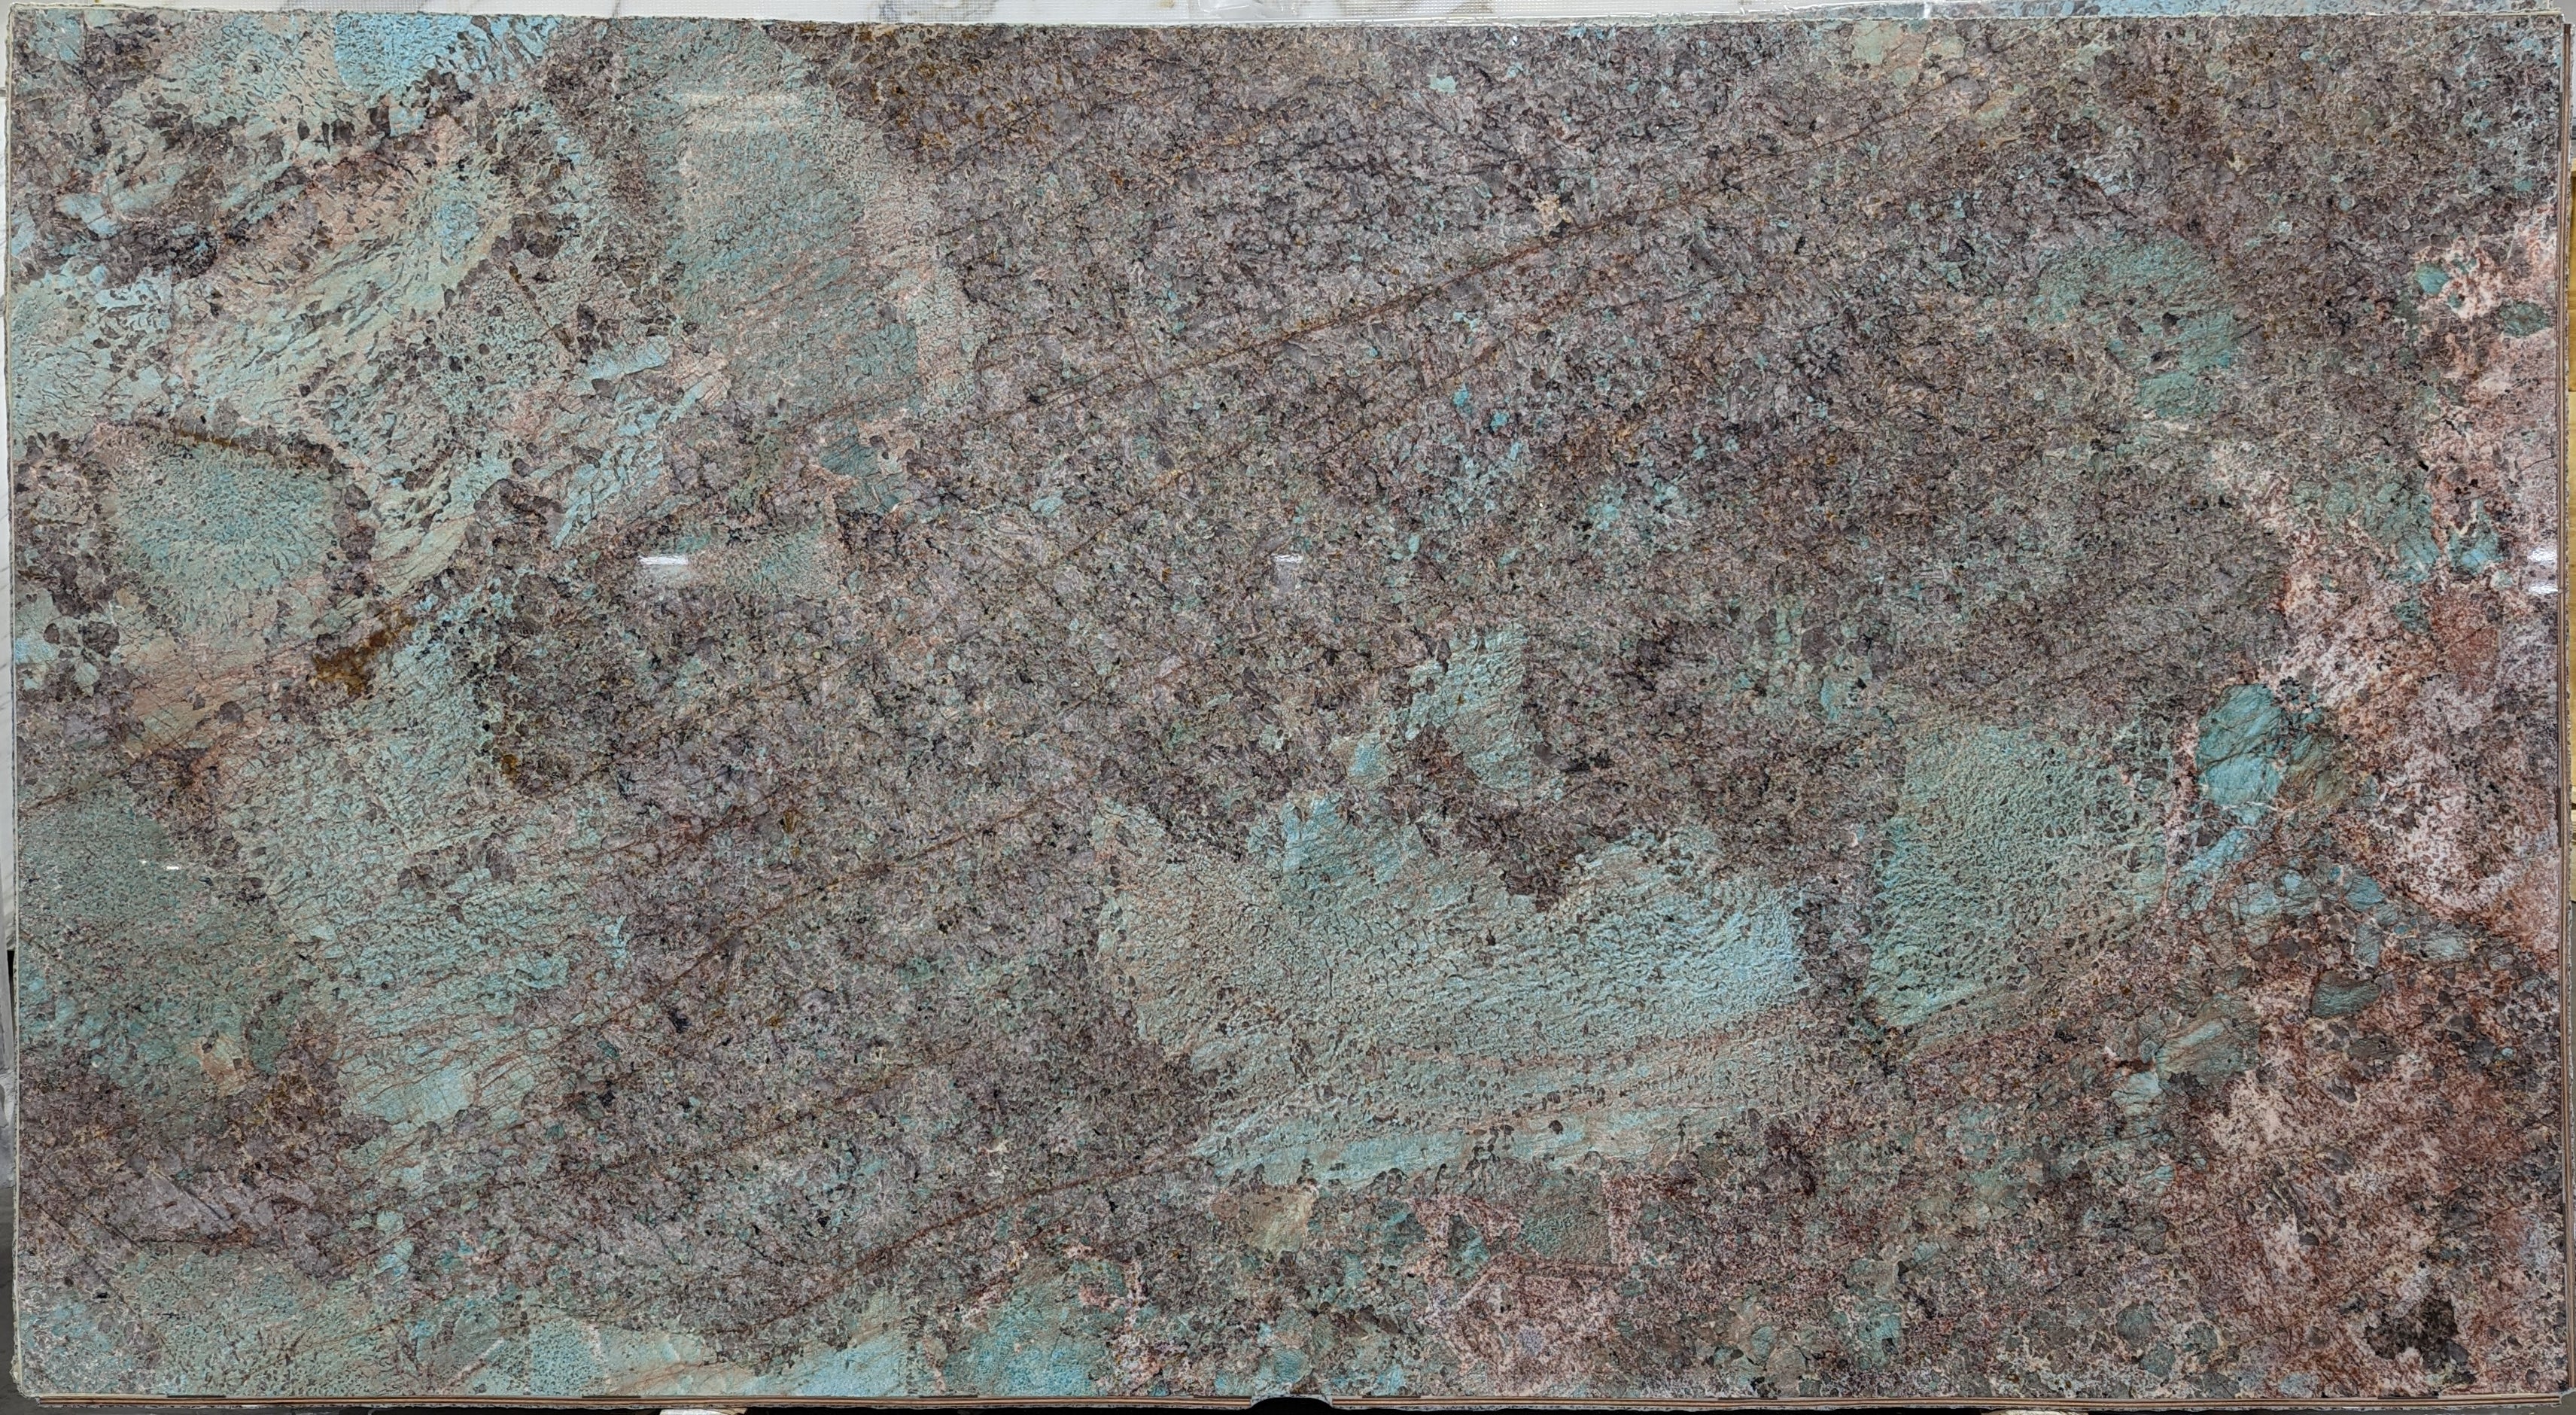  Amazonite Quartzite Slab 3/4  Polished Stone - 20921#34 -  64X119 